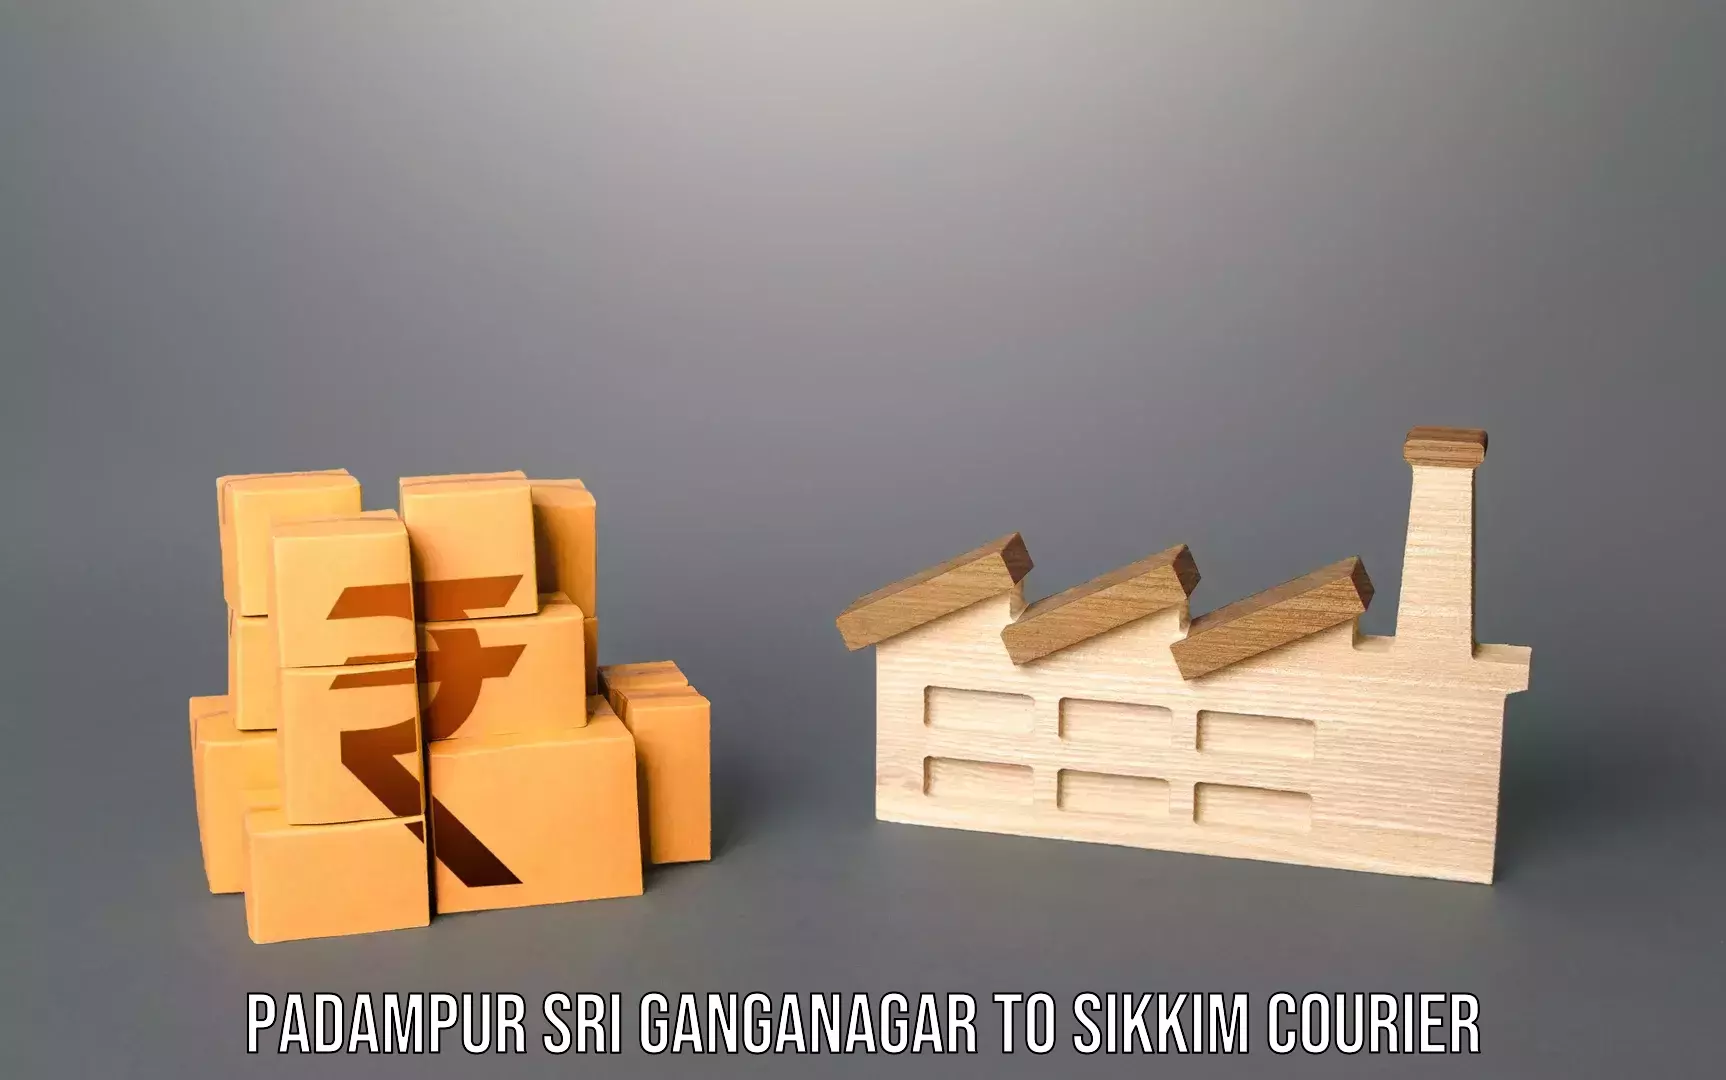 Global baggage shipping Padampur Sri Ganganagar to Sikkim